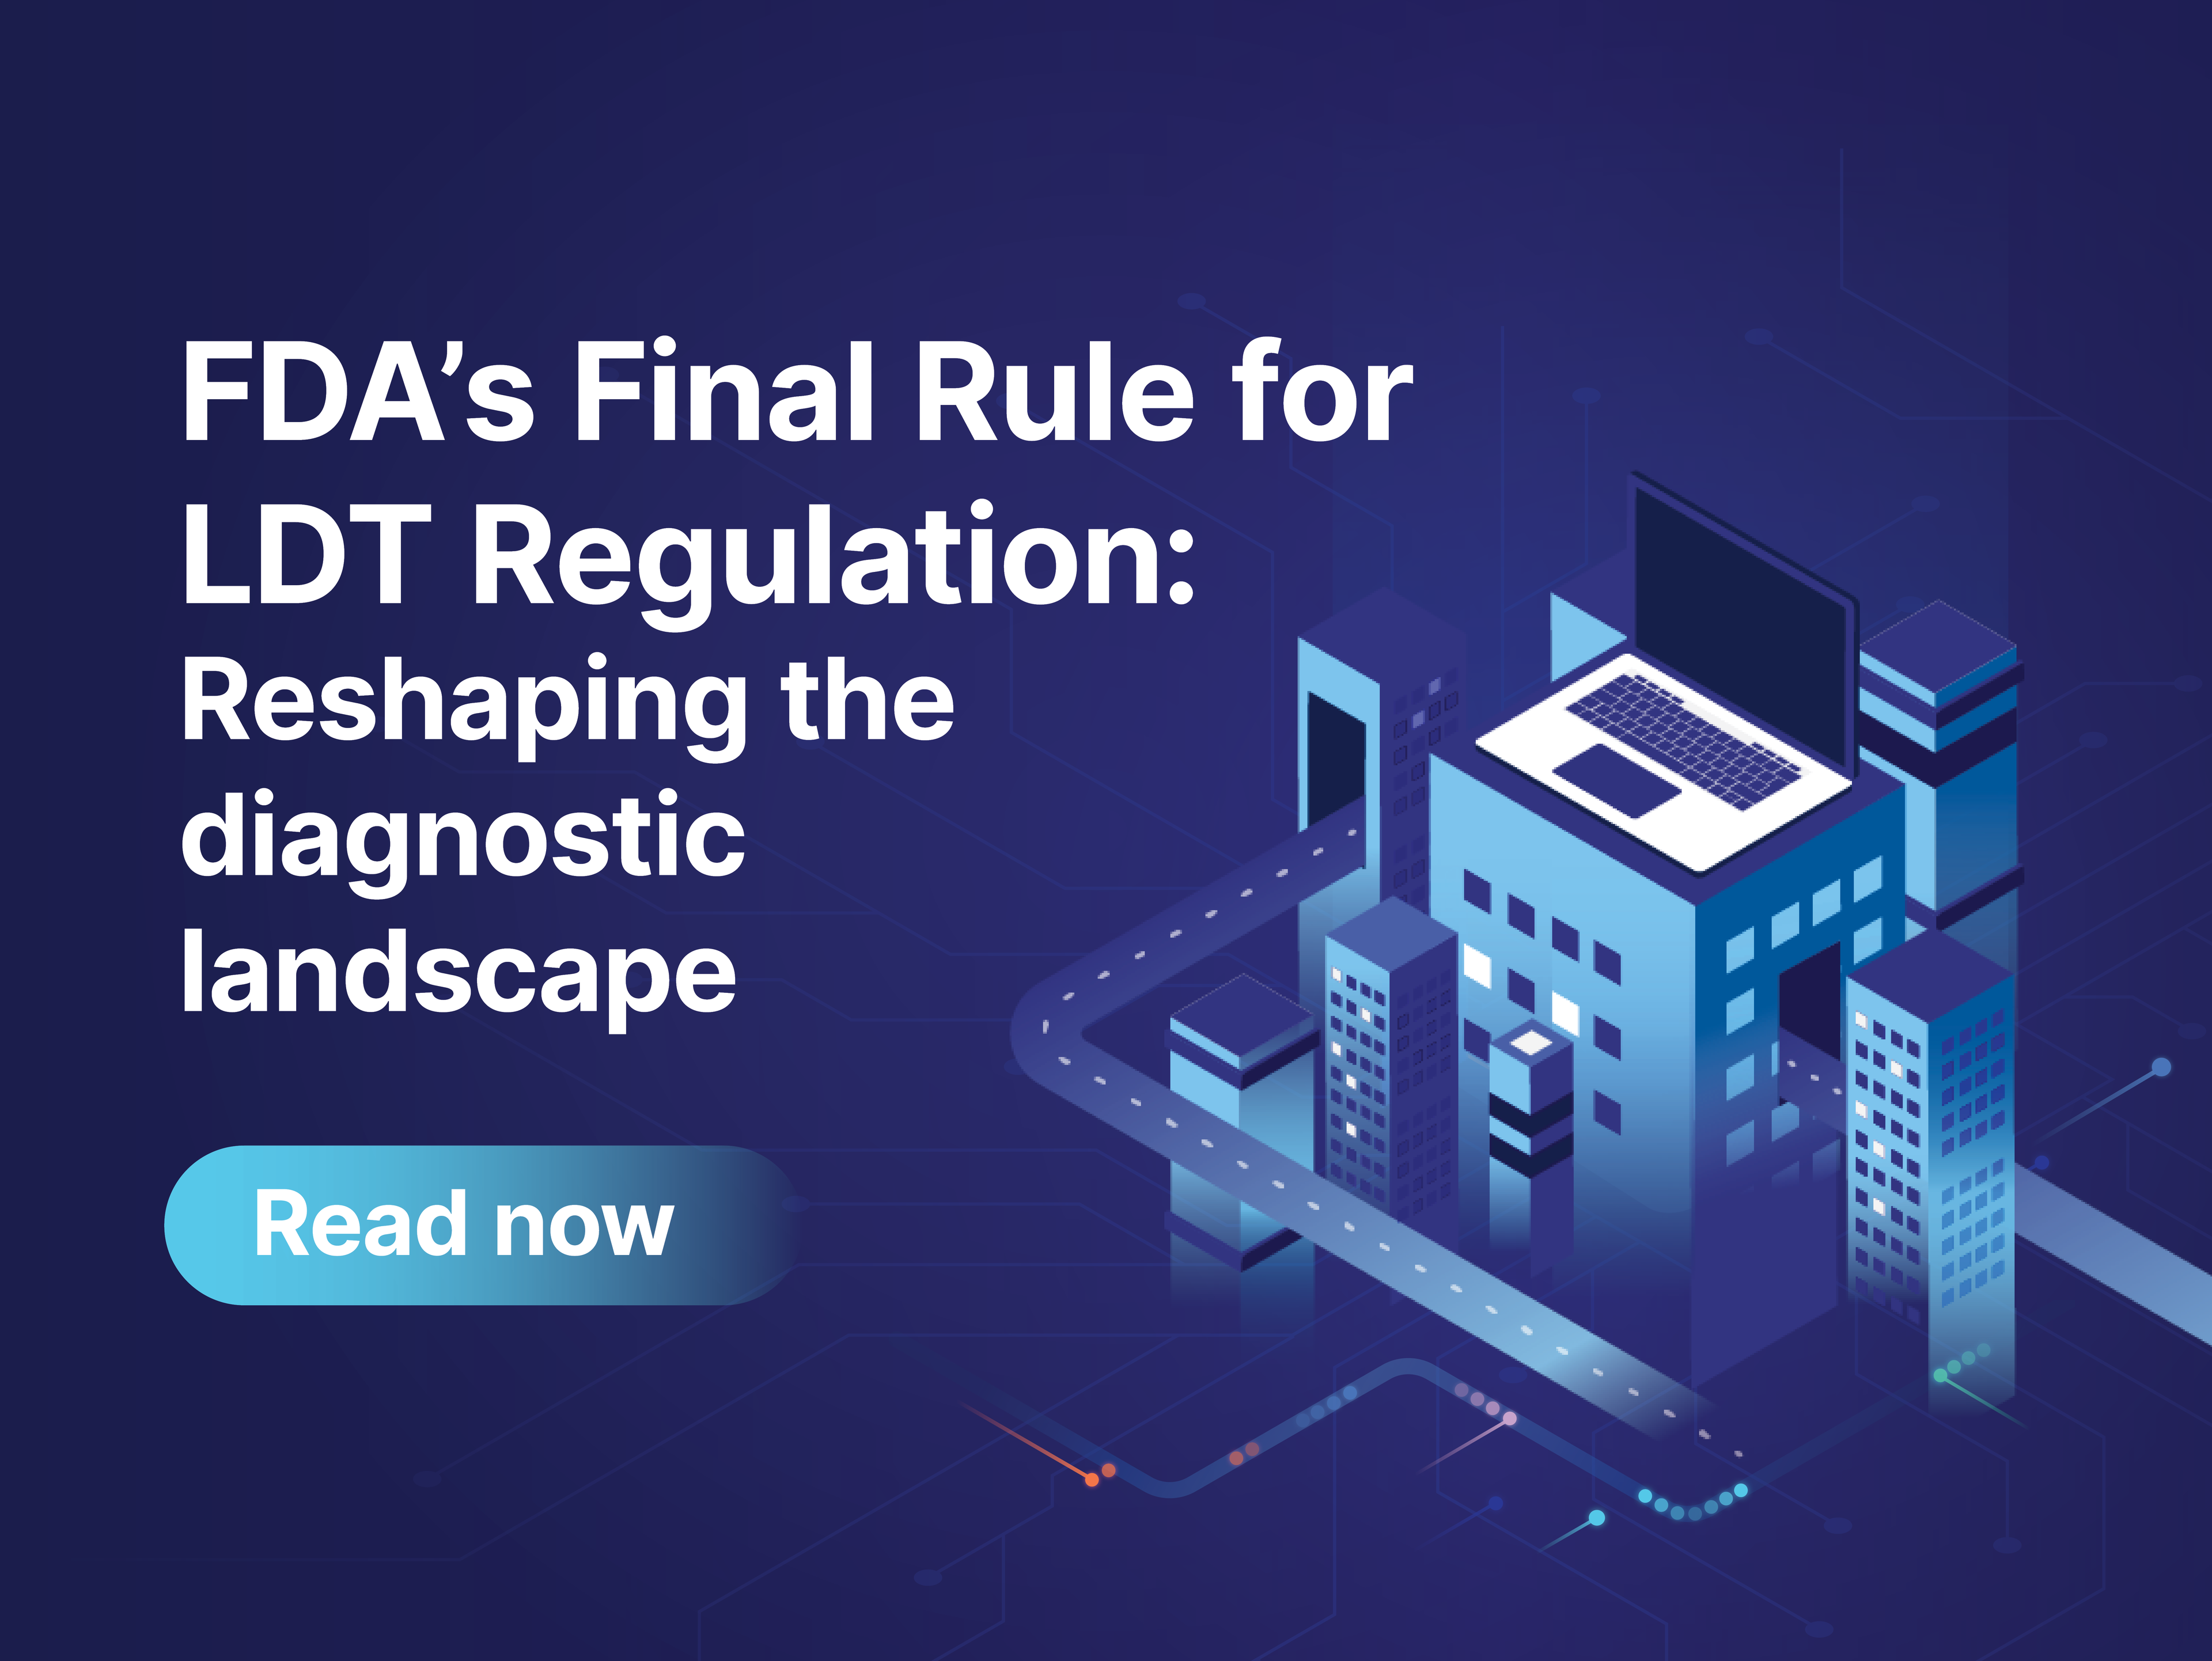 FDA’s final rule for LDT regulation: Reshaping the diagnostic landscape